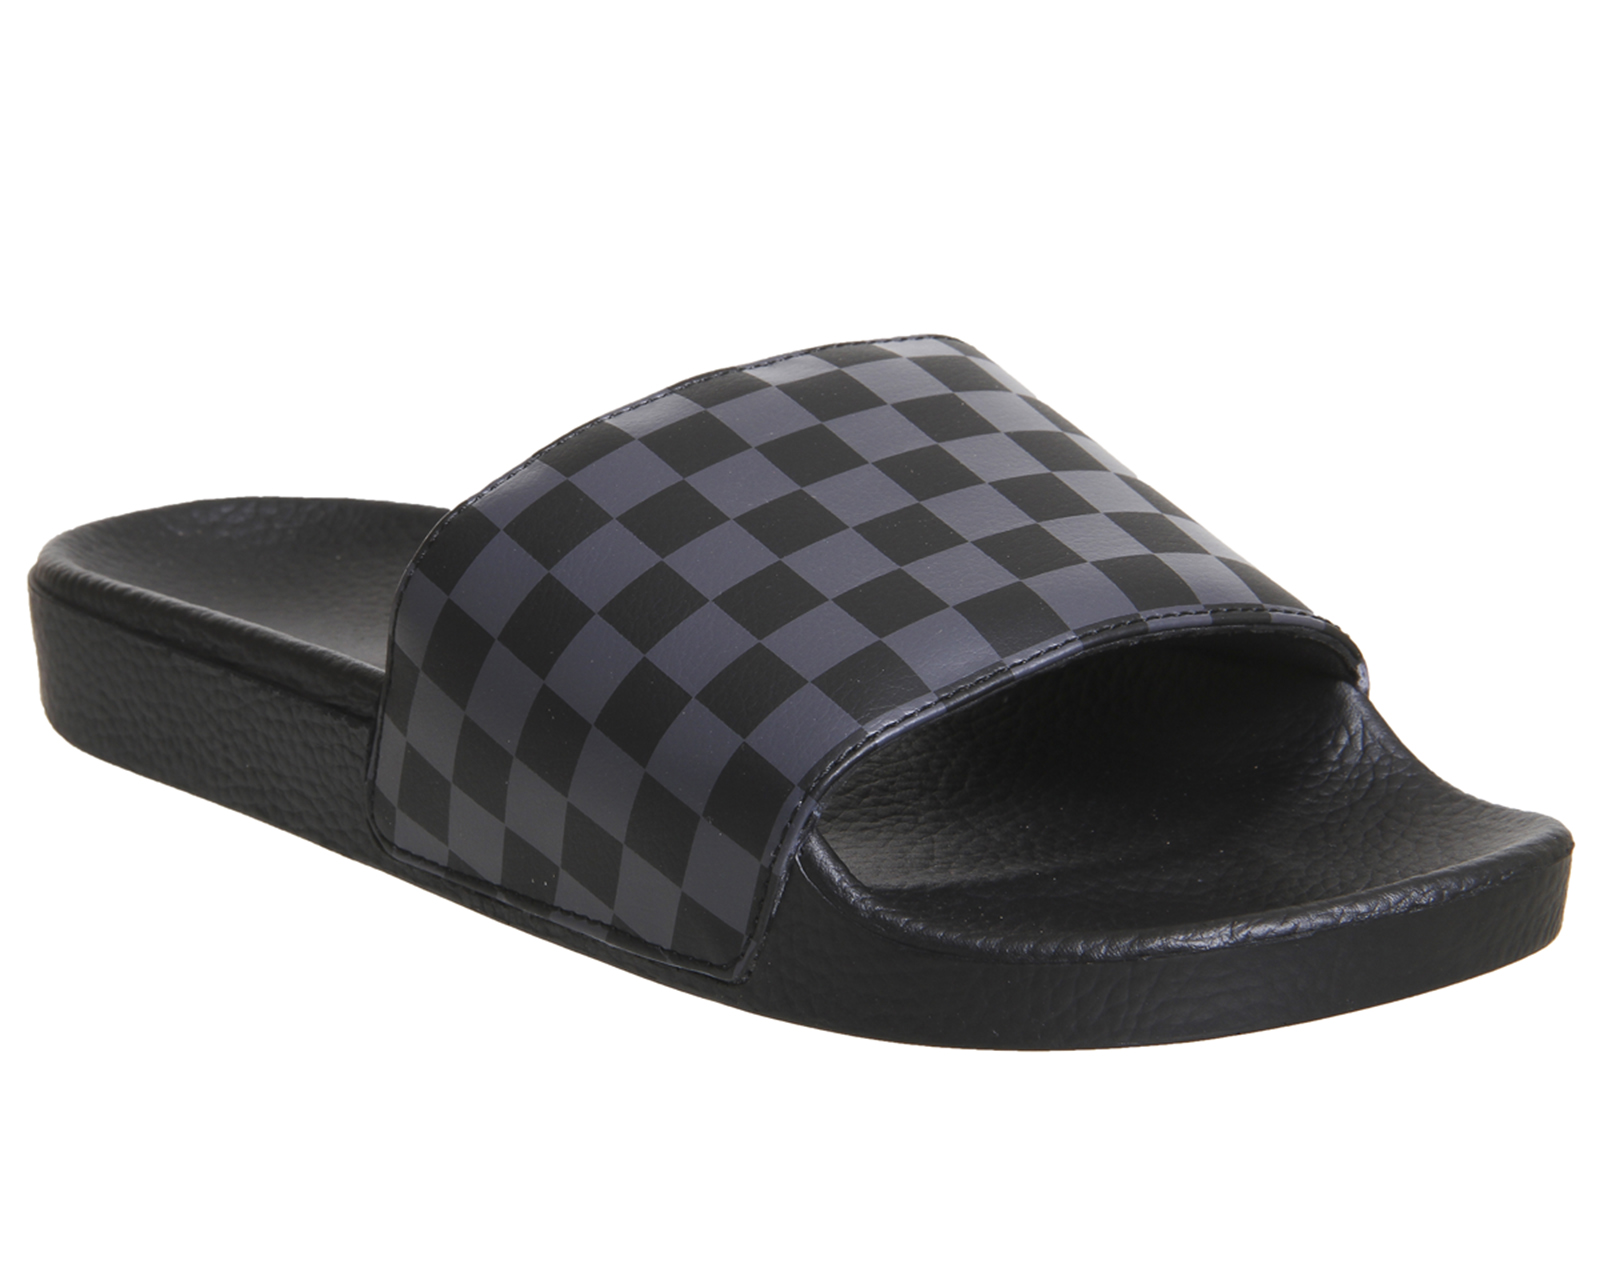 checkered van sandals